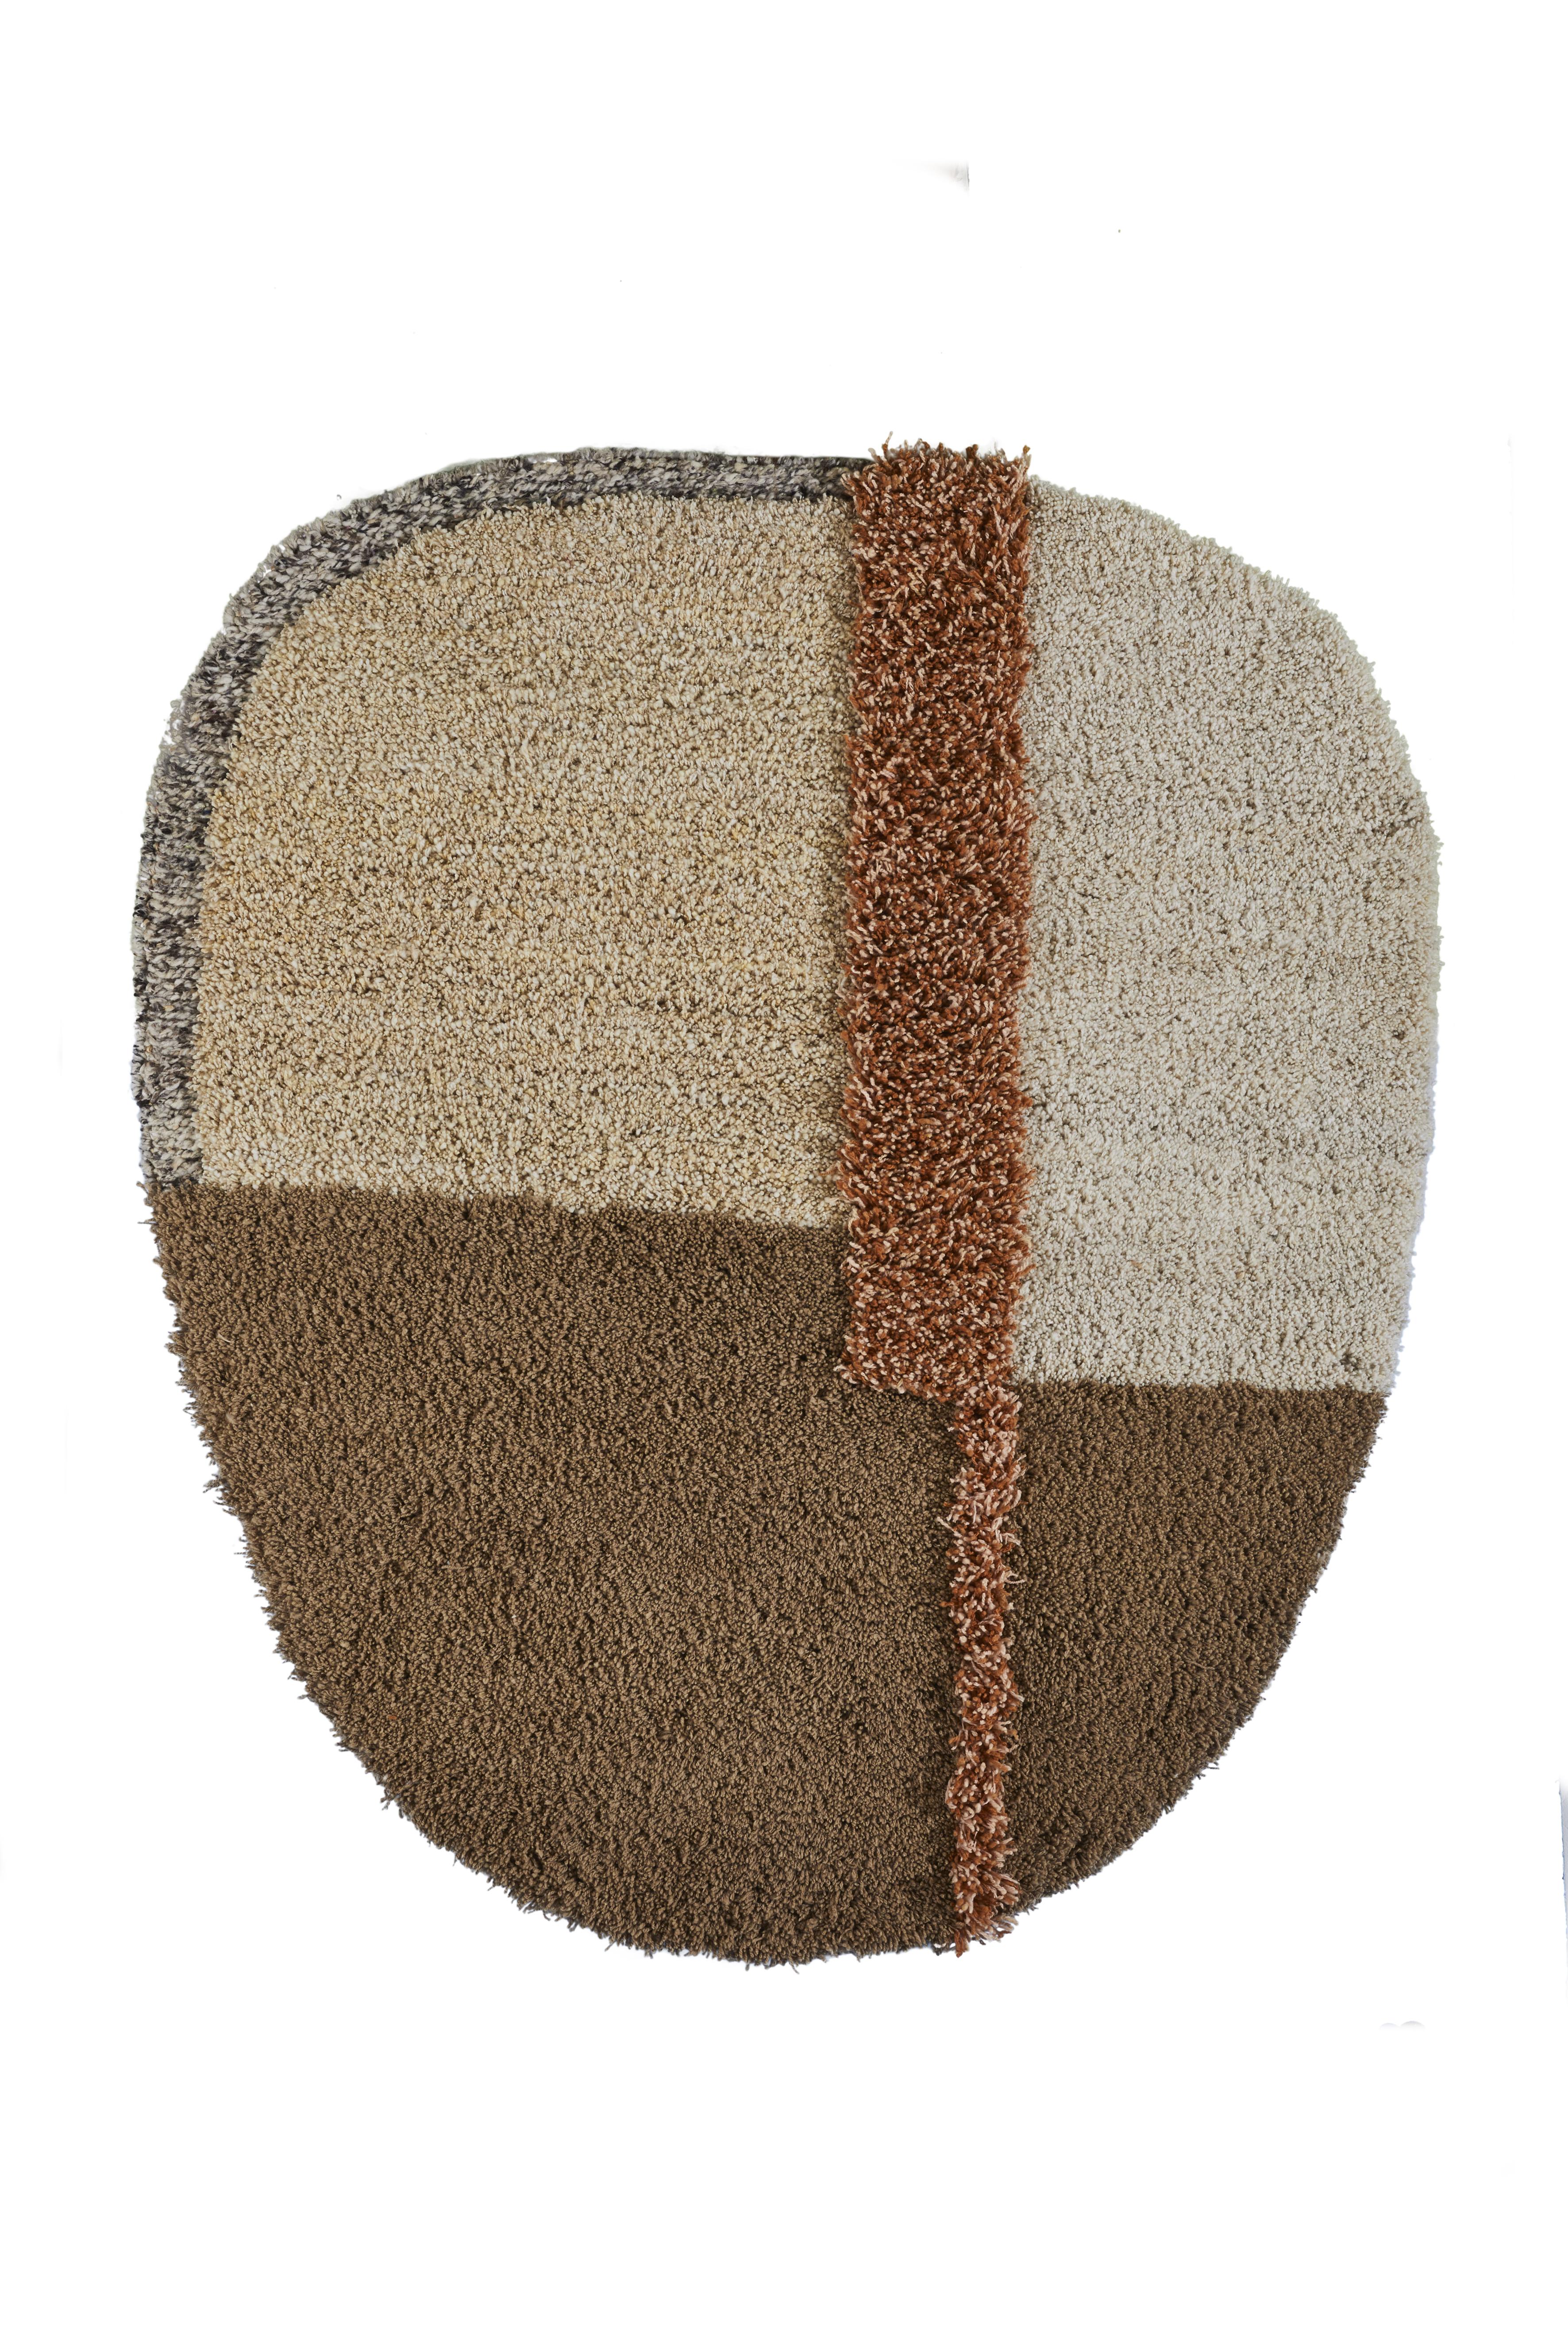 Kleiner Nudo-Teppich von Sebastian Herkner
MATERIALIEN: 100% natürliche Schurwolle. 
Technik: handgewebt in Kolumbien.
Abmessungen: B 160 x L 190 cm 
Erhältlich in den Farben: weiß/ beige/ rosa, grau/ grün/ schwarz, blau/ orange/ ocker, braun/